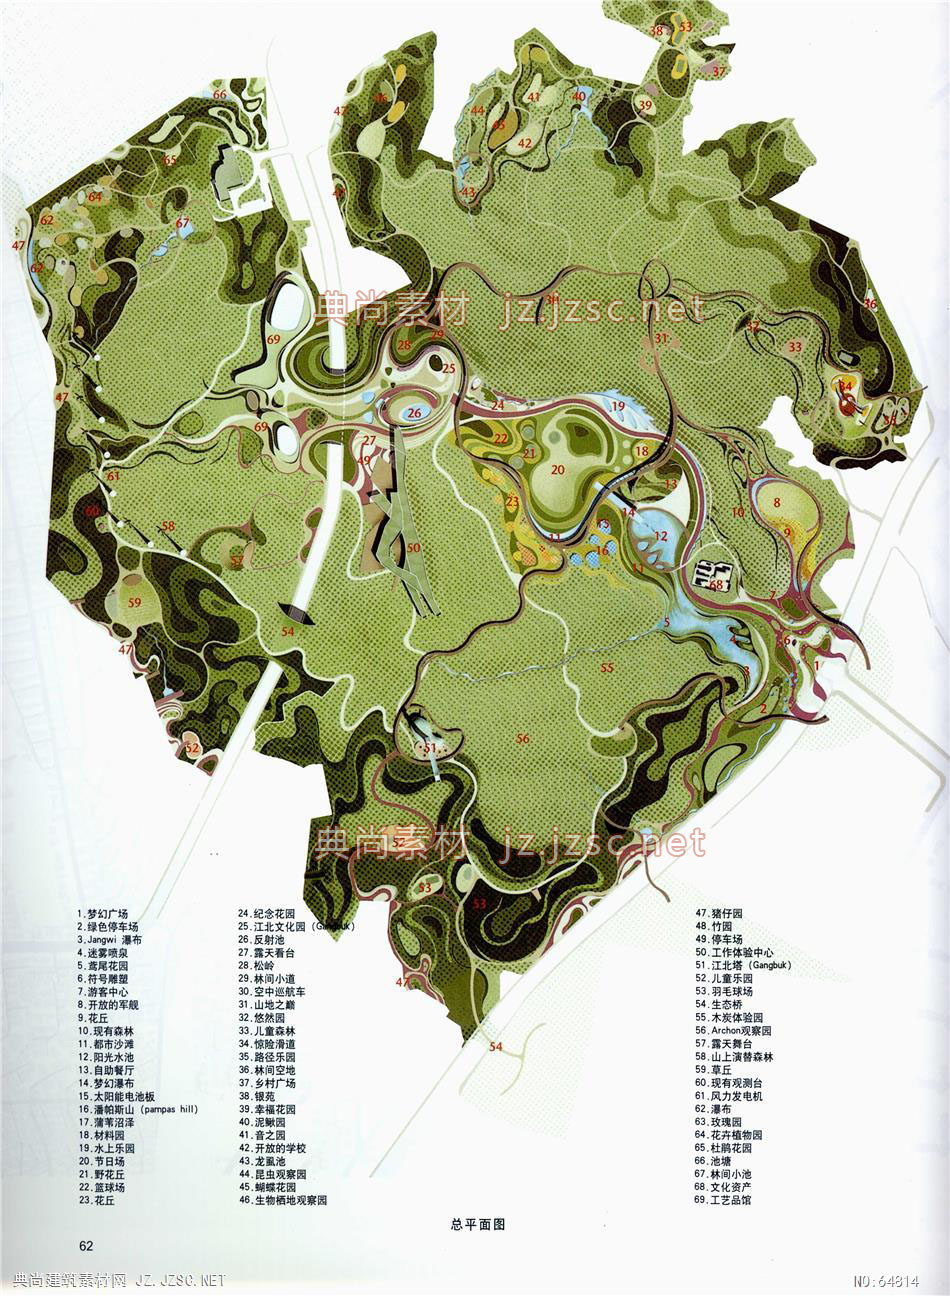 景观总平面图 (165)